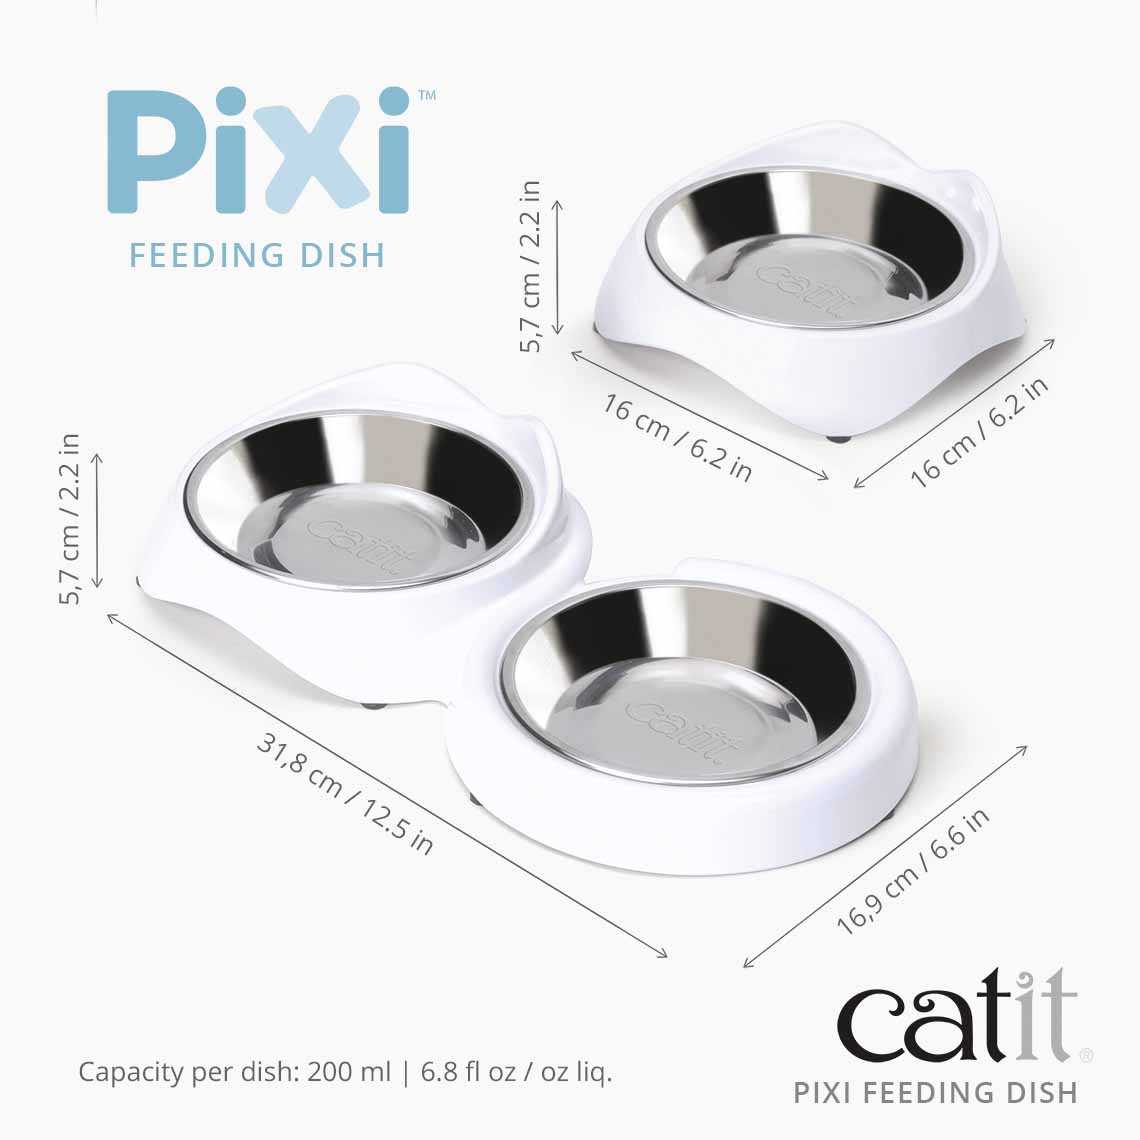 Catit Pixi Feeding Dish